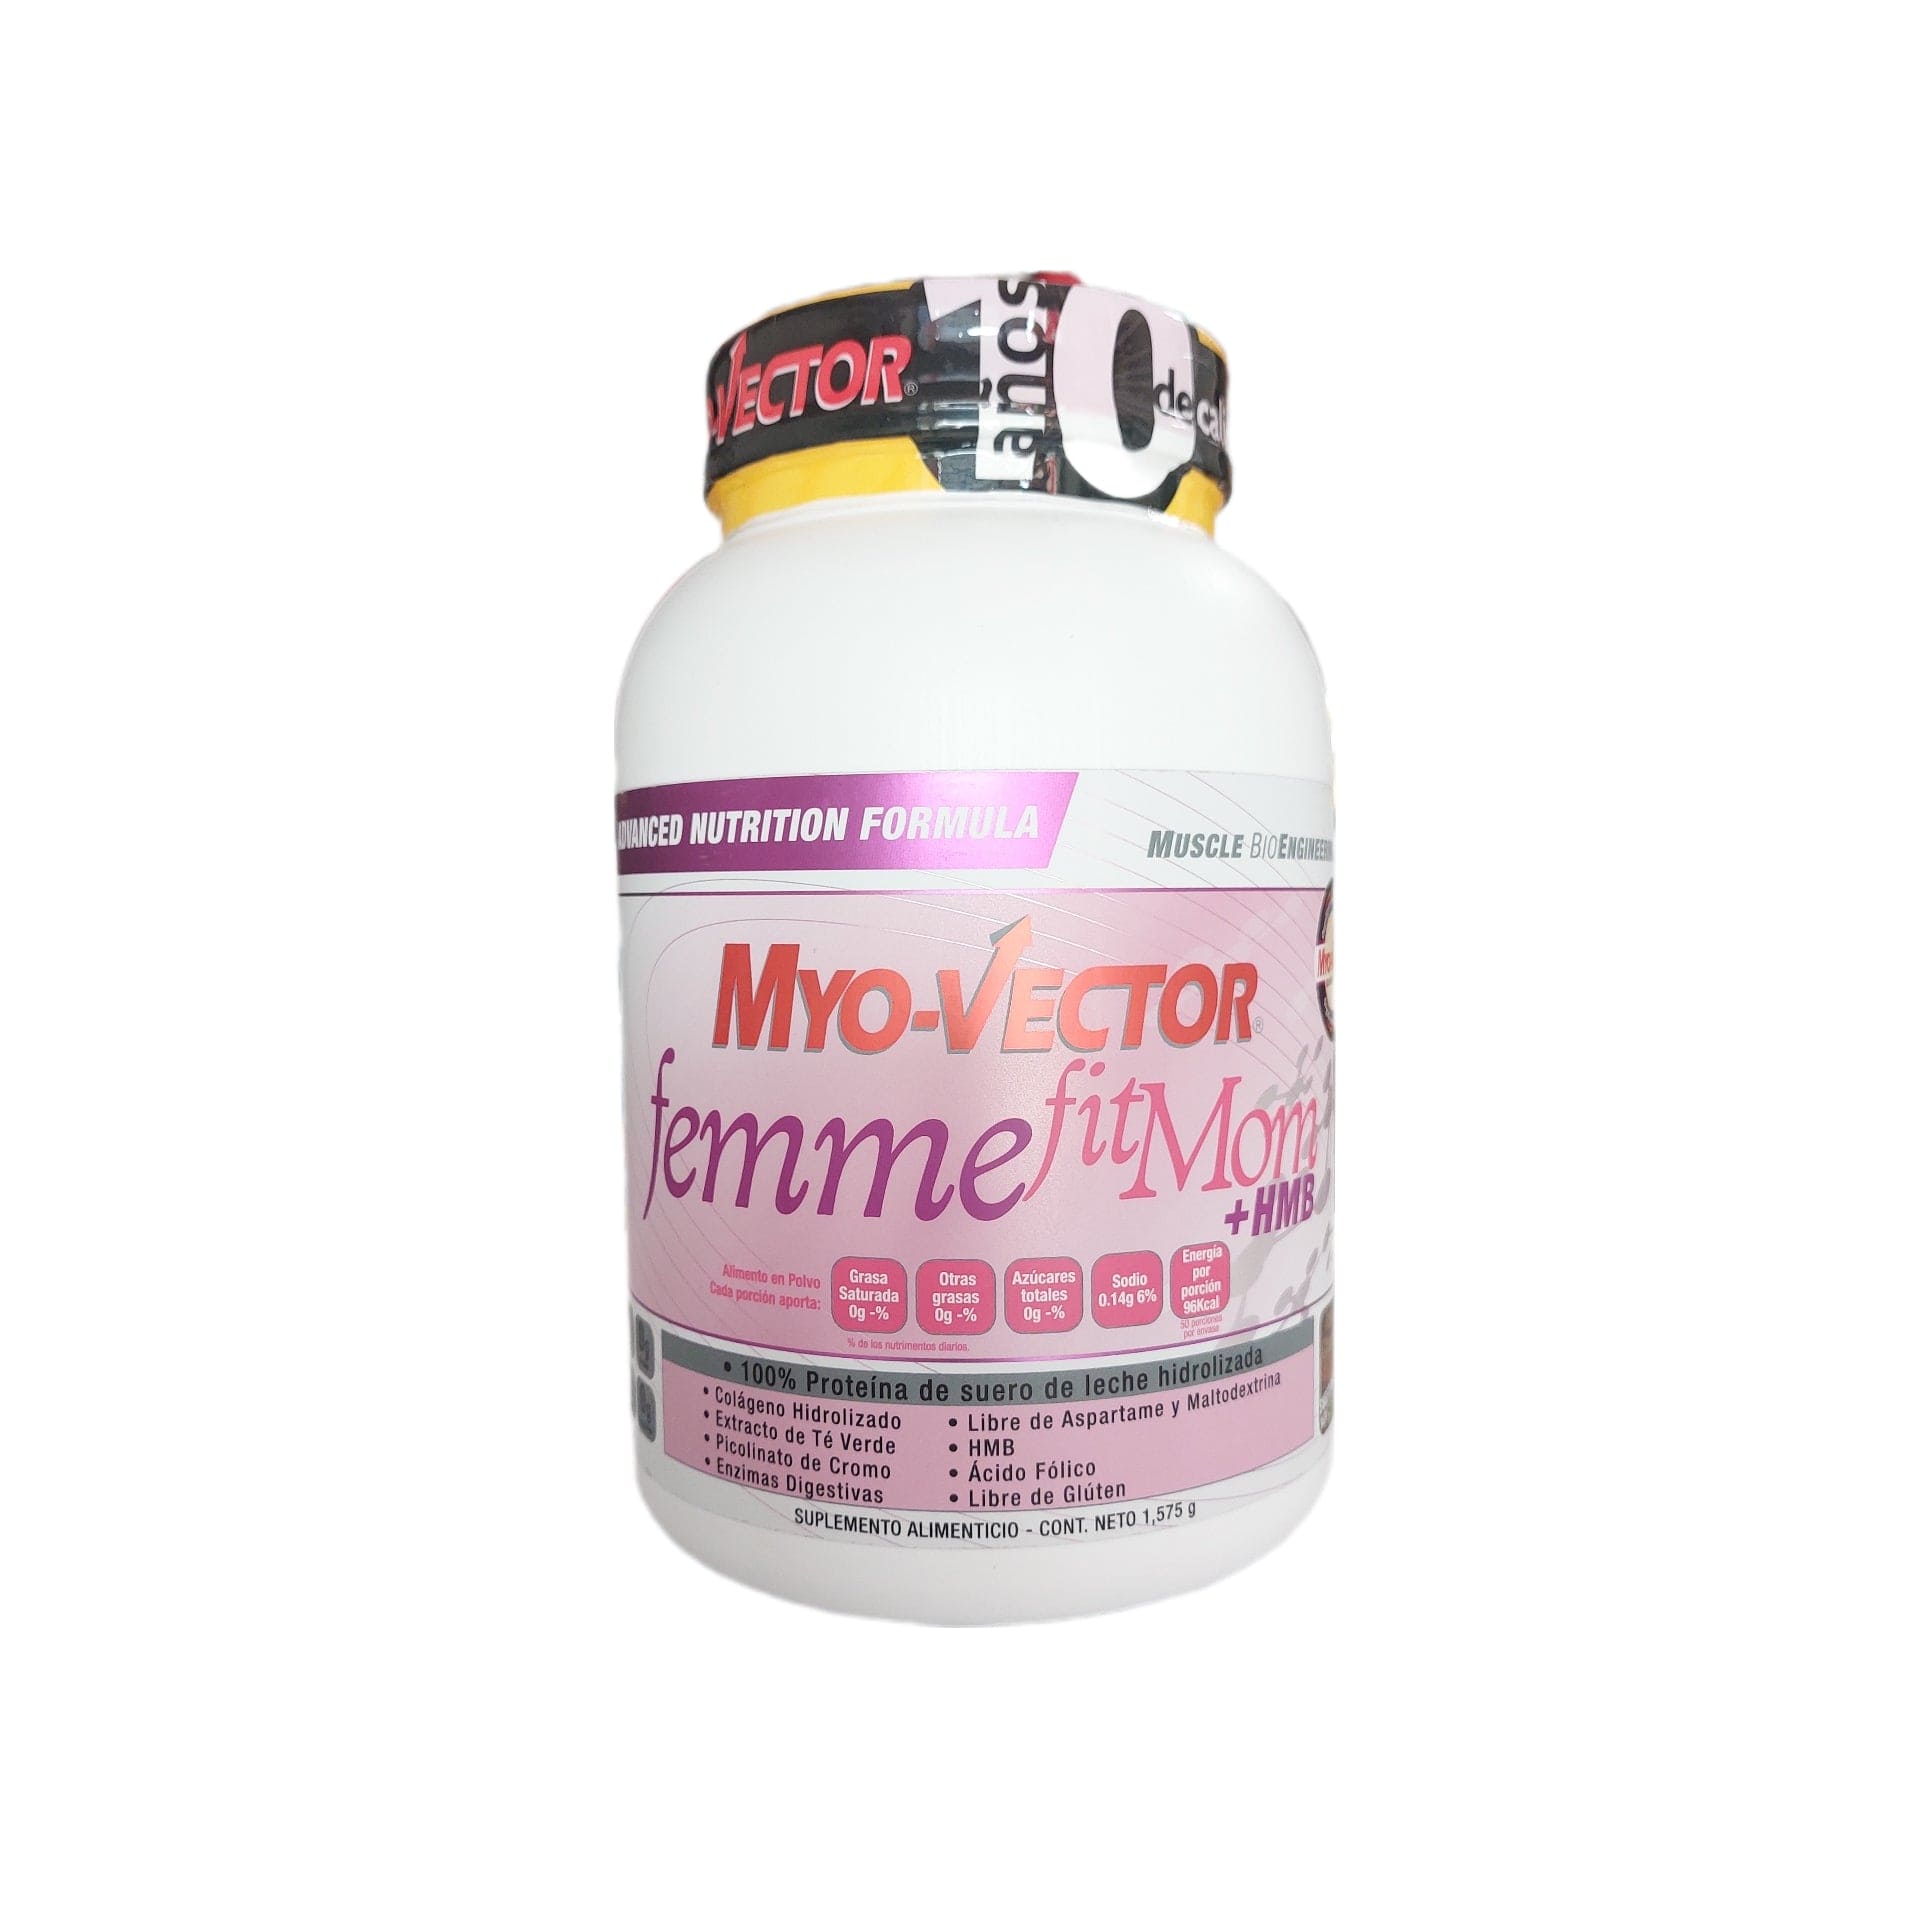 Proteina Myo-Vector Femme 3 Lb Fit Mom + Hmb - Body Fit Supplements